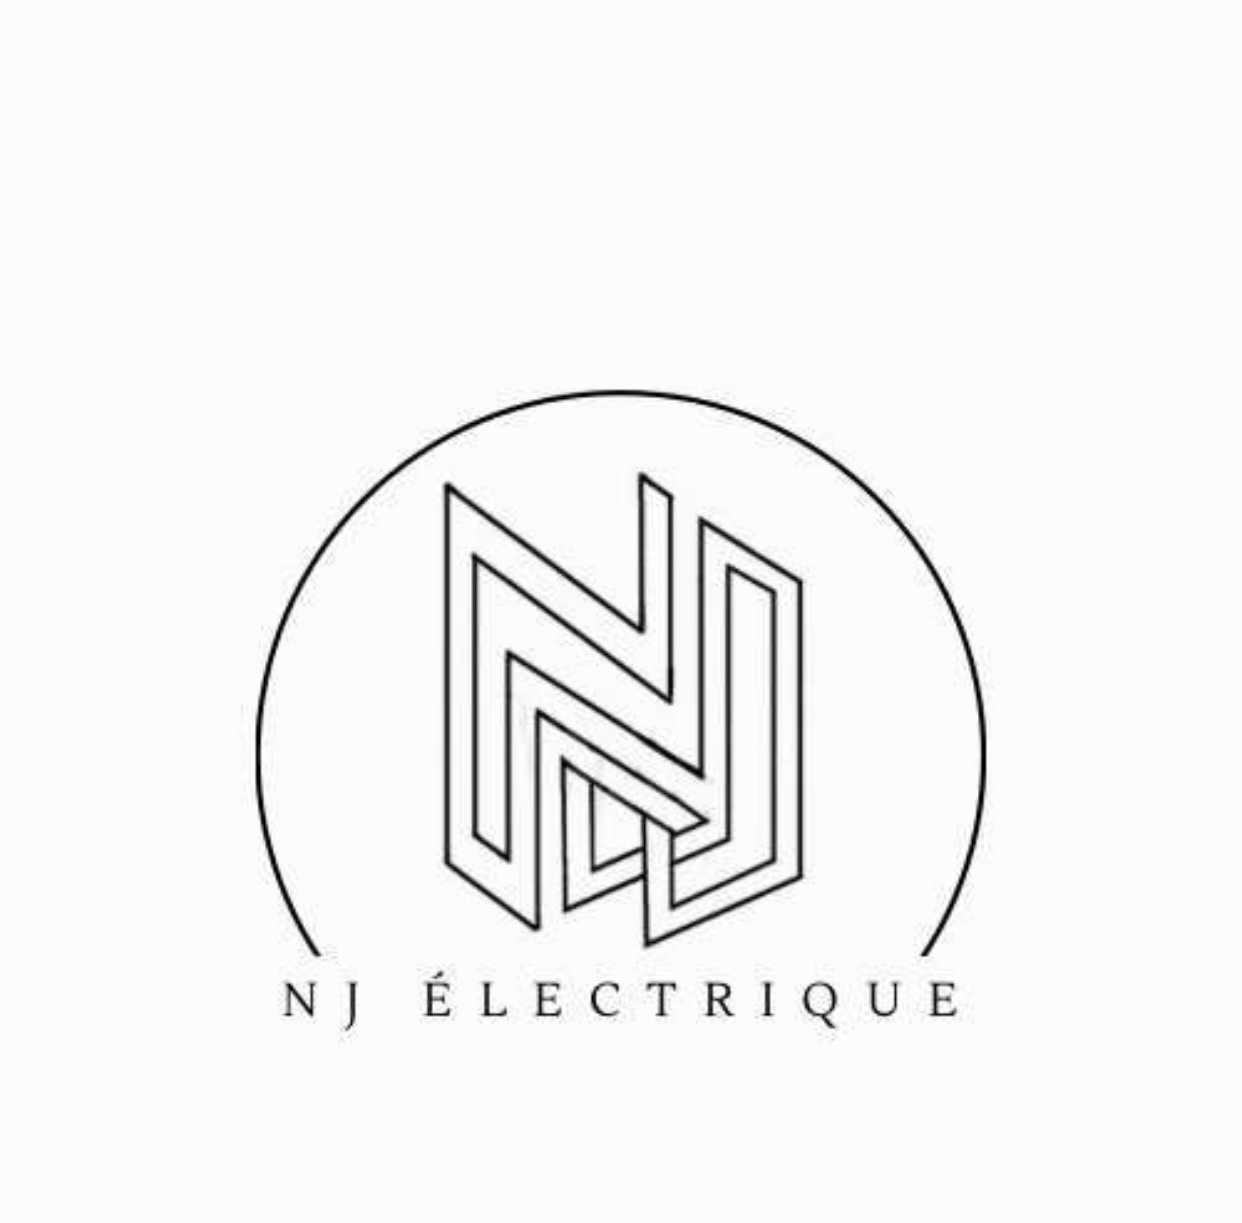 NJ Electrique